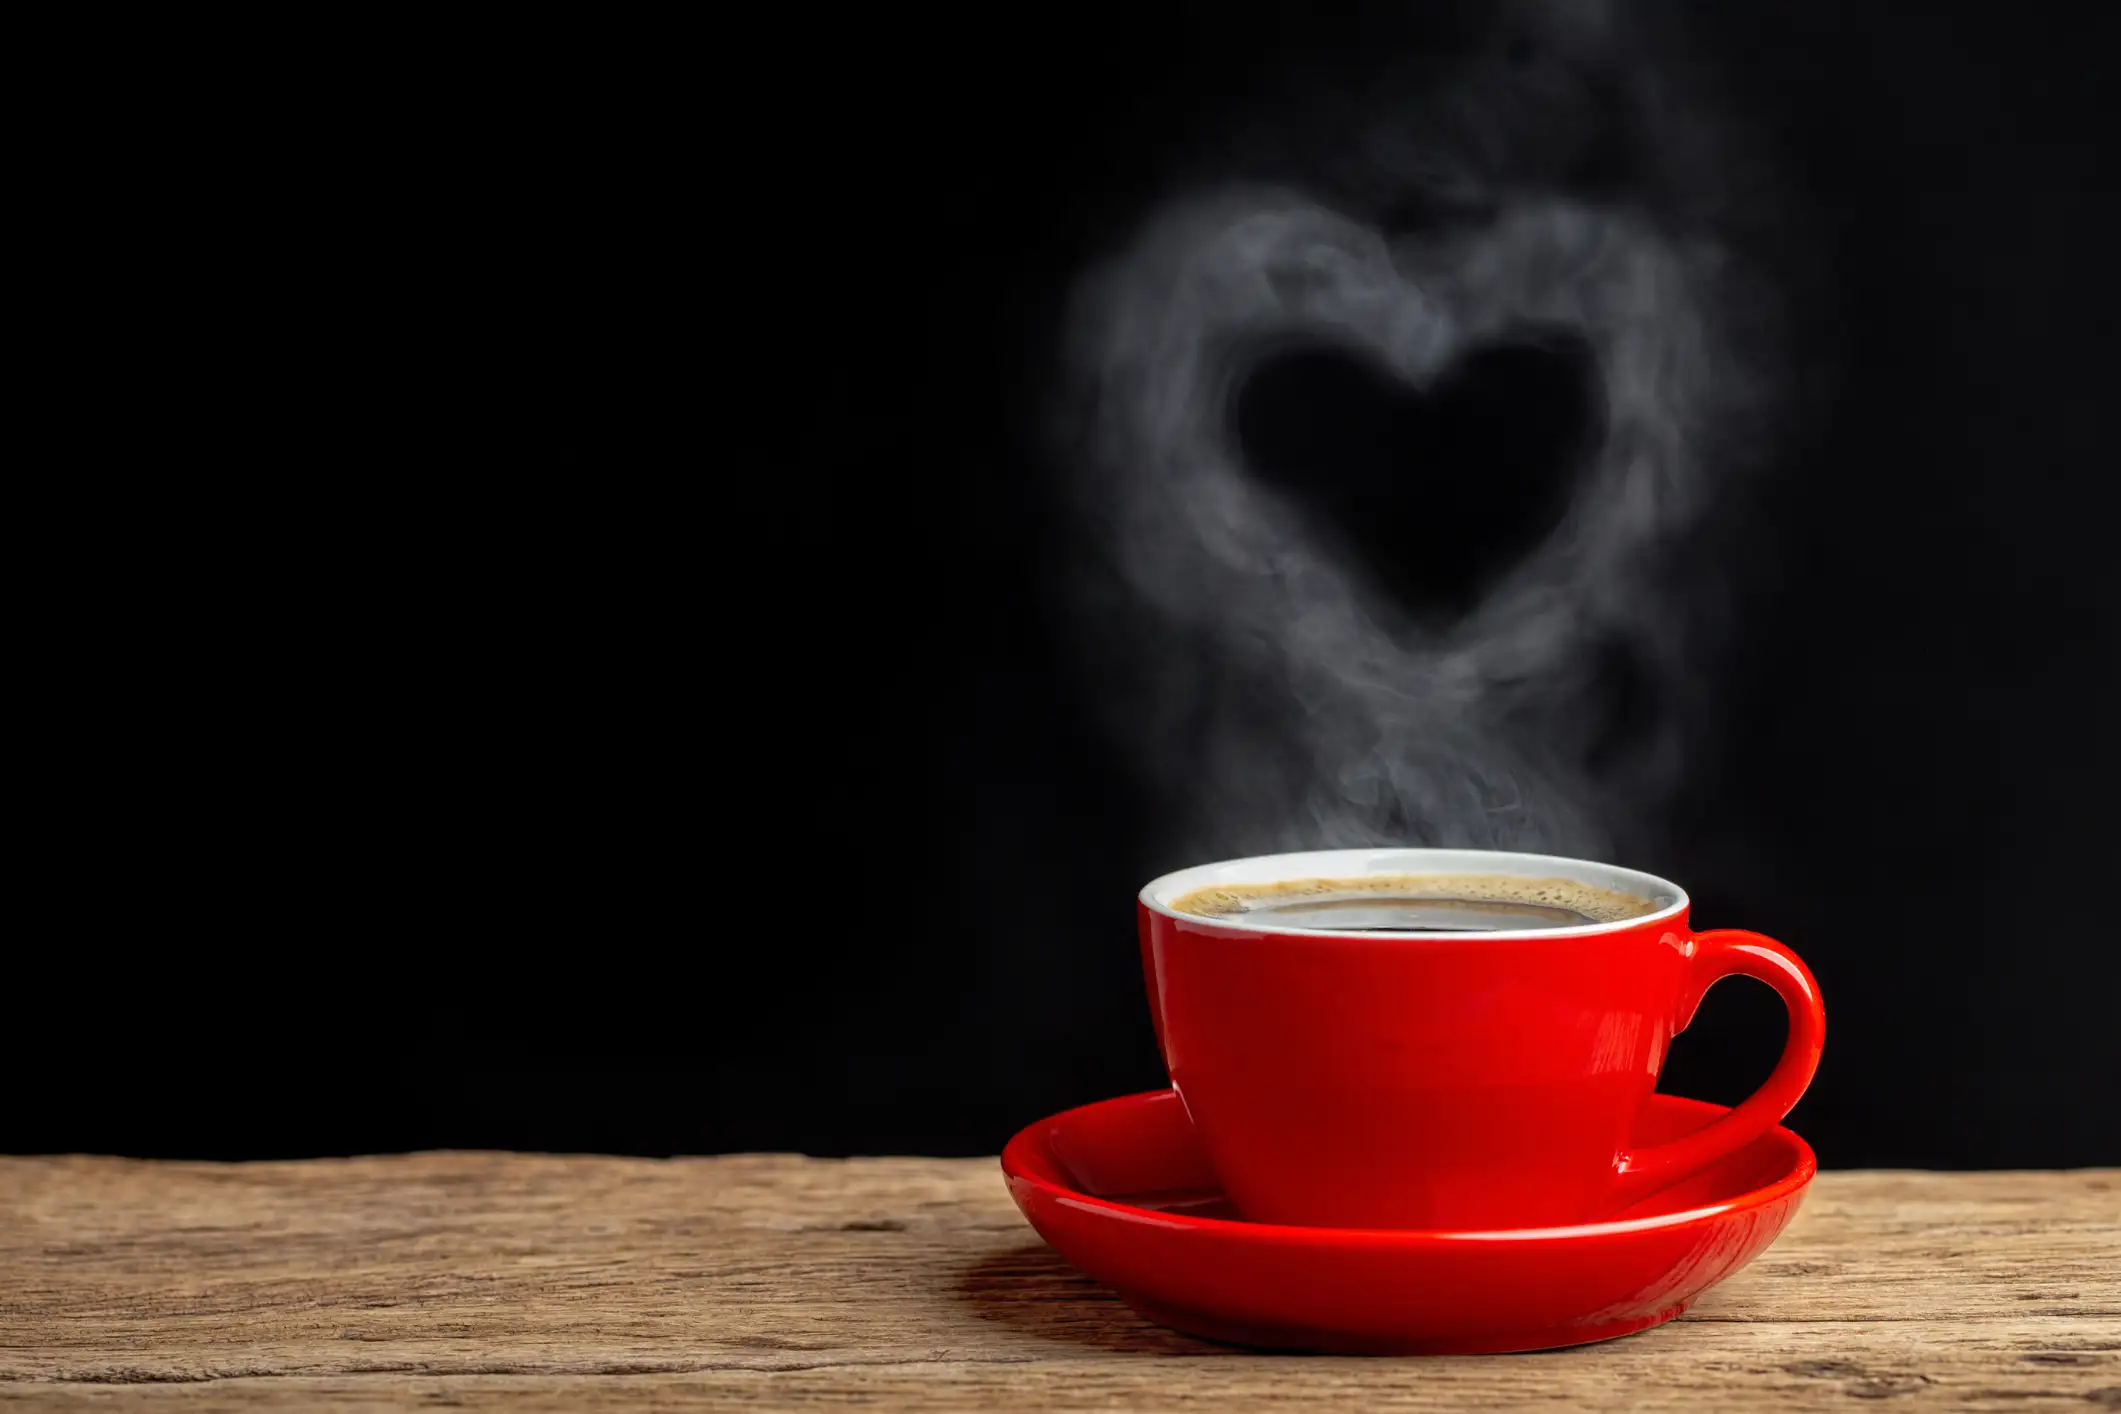 Употребление кофеина в обычных количествах способно снизить риск аритмии